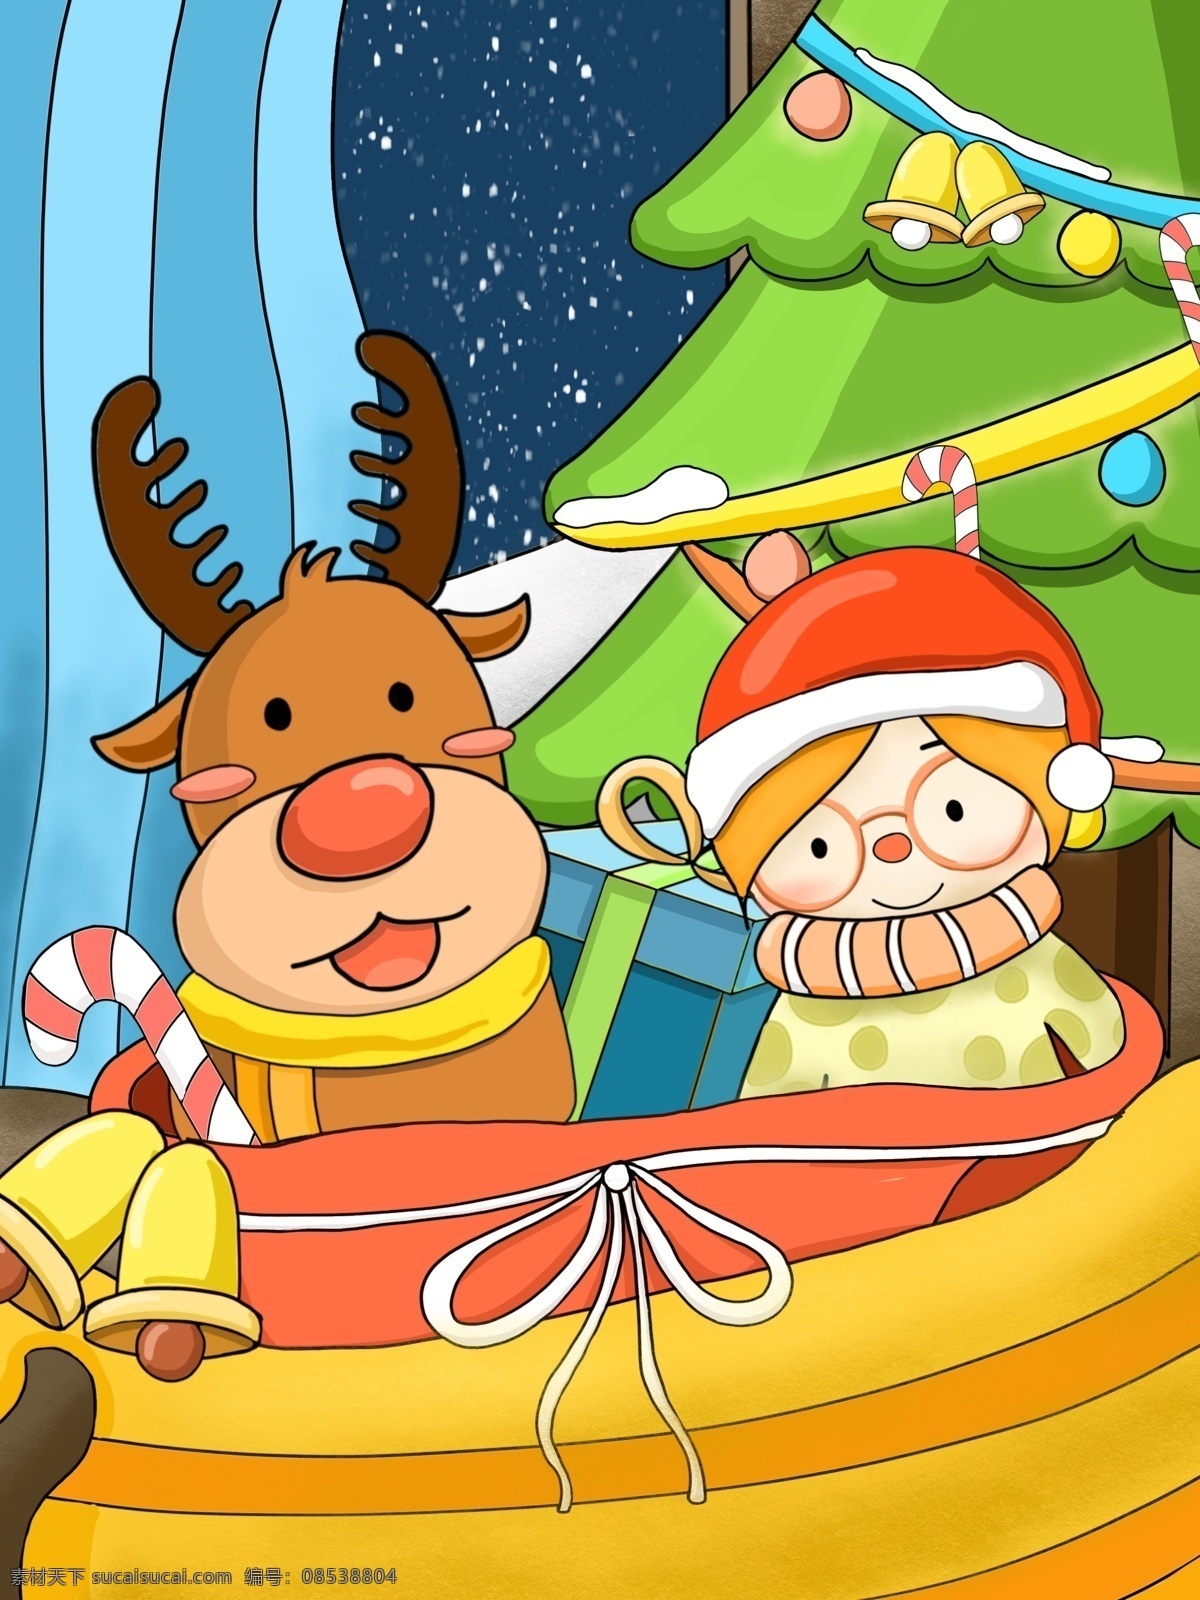 圣诞节 礼物 女孩 麋鹿 圣诞树 雪景 窗帘 铃铛 彩花 雪橇 圣诞袋 礼物盒 棒棒糖